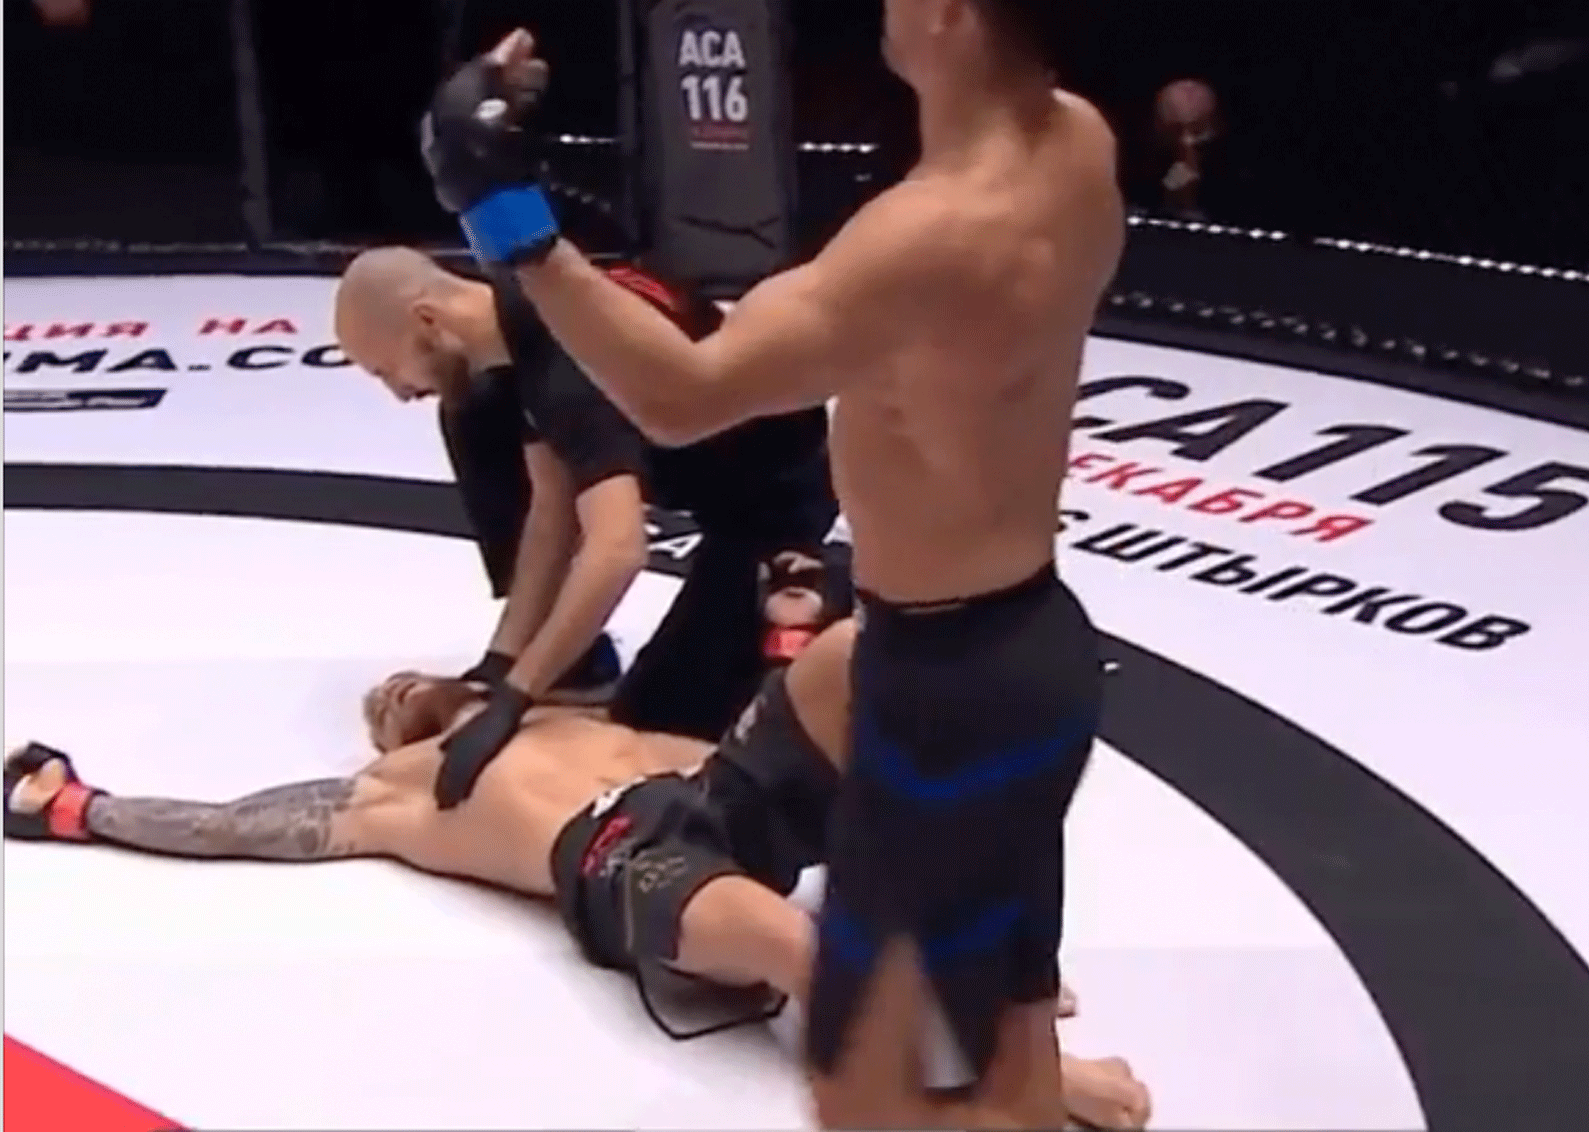 MMA-vechter tijdens debuut in 'slaap gewiegd' door tegenstander (video)